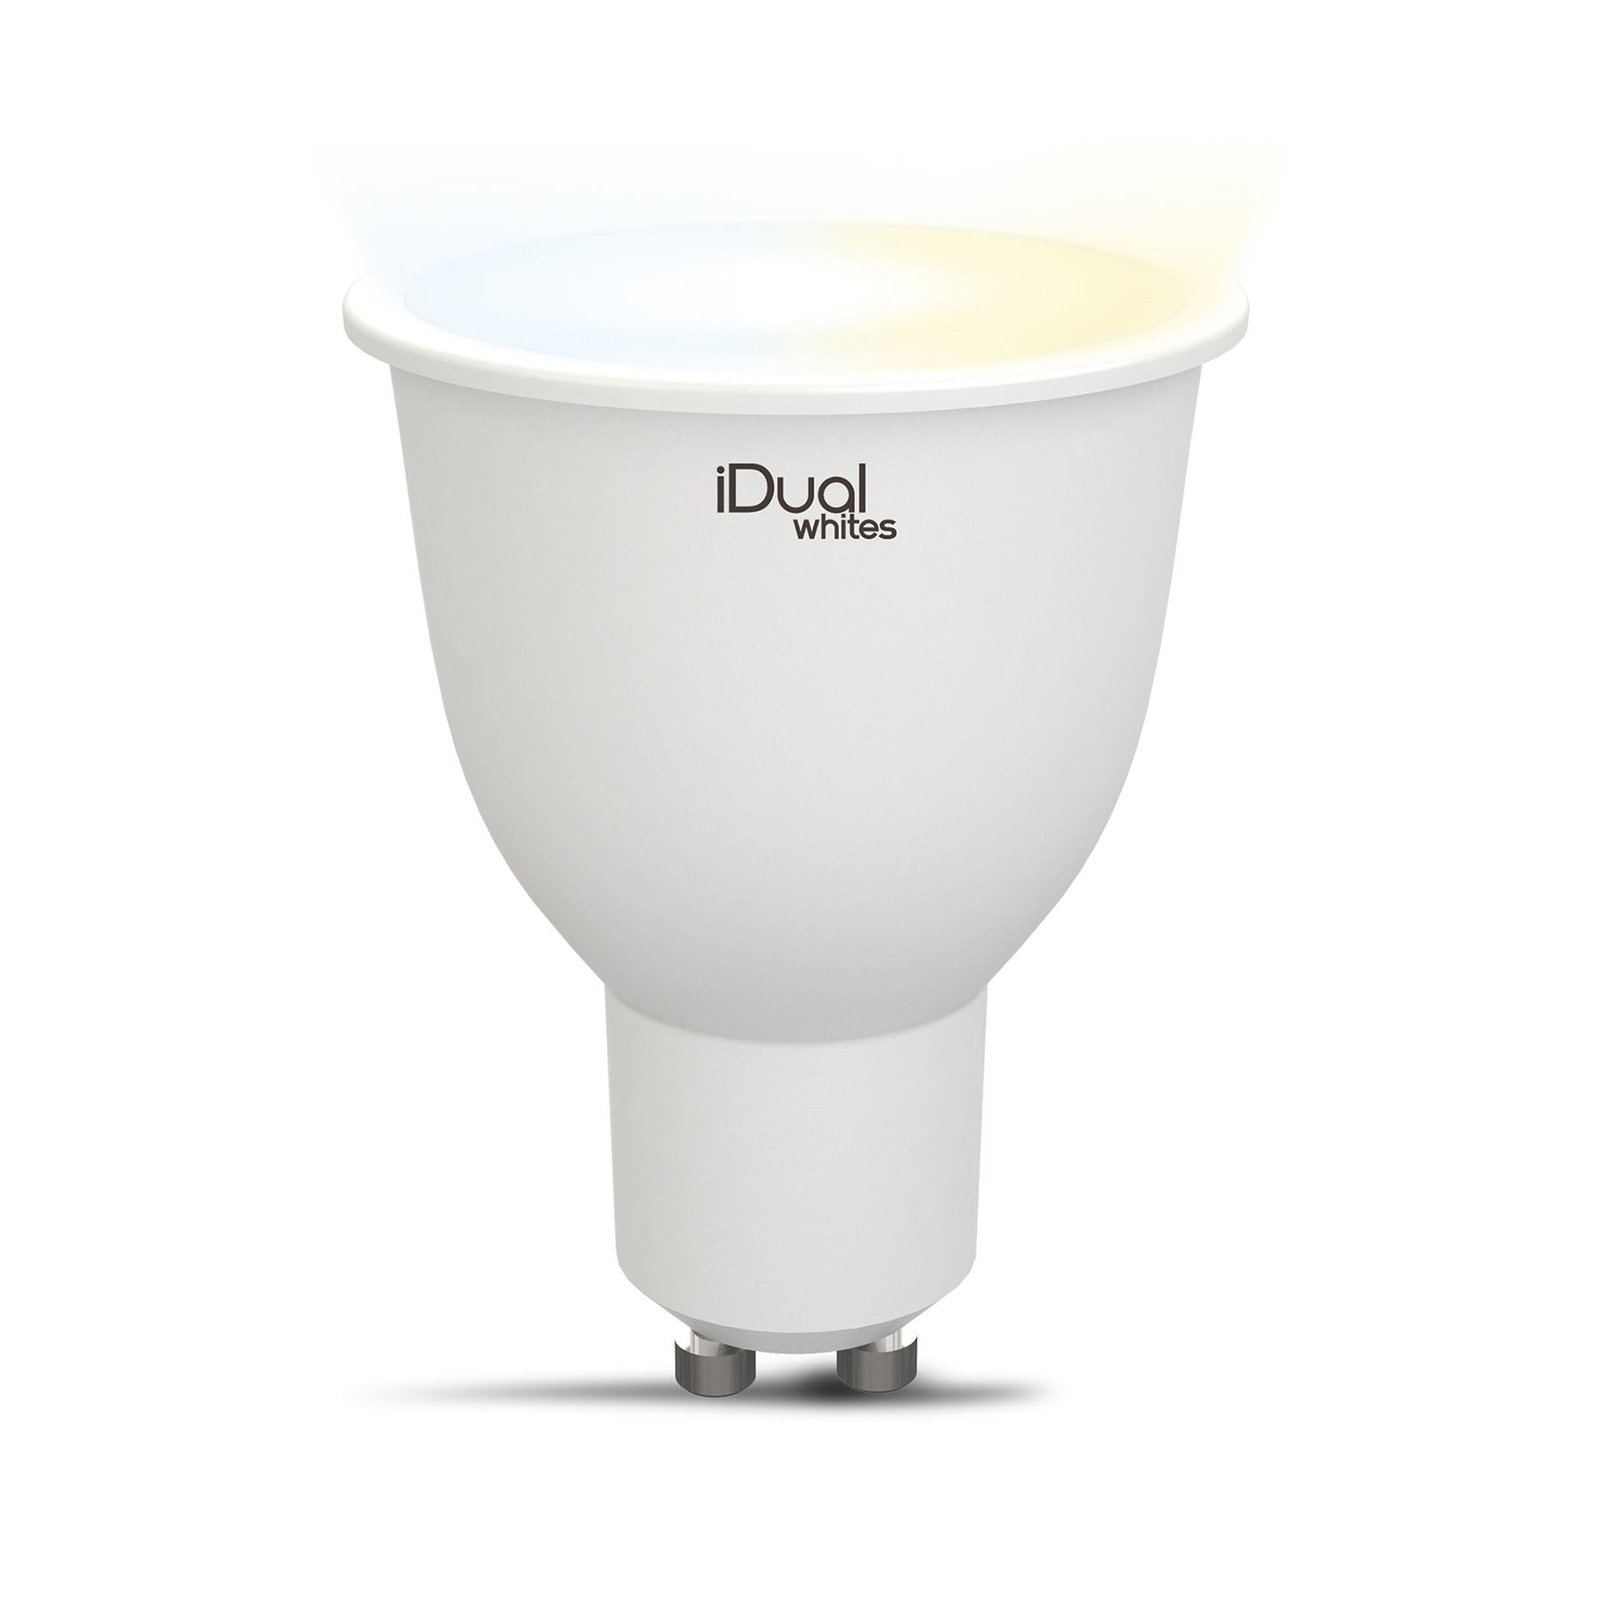 iDual Whites LED reflector GU10 5,8W tunable white